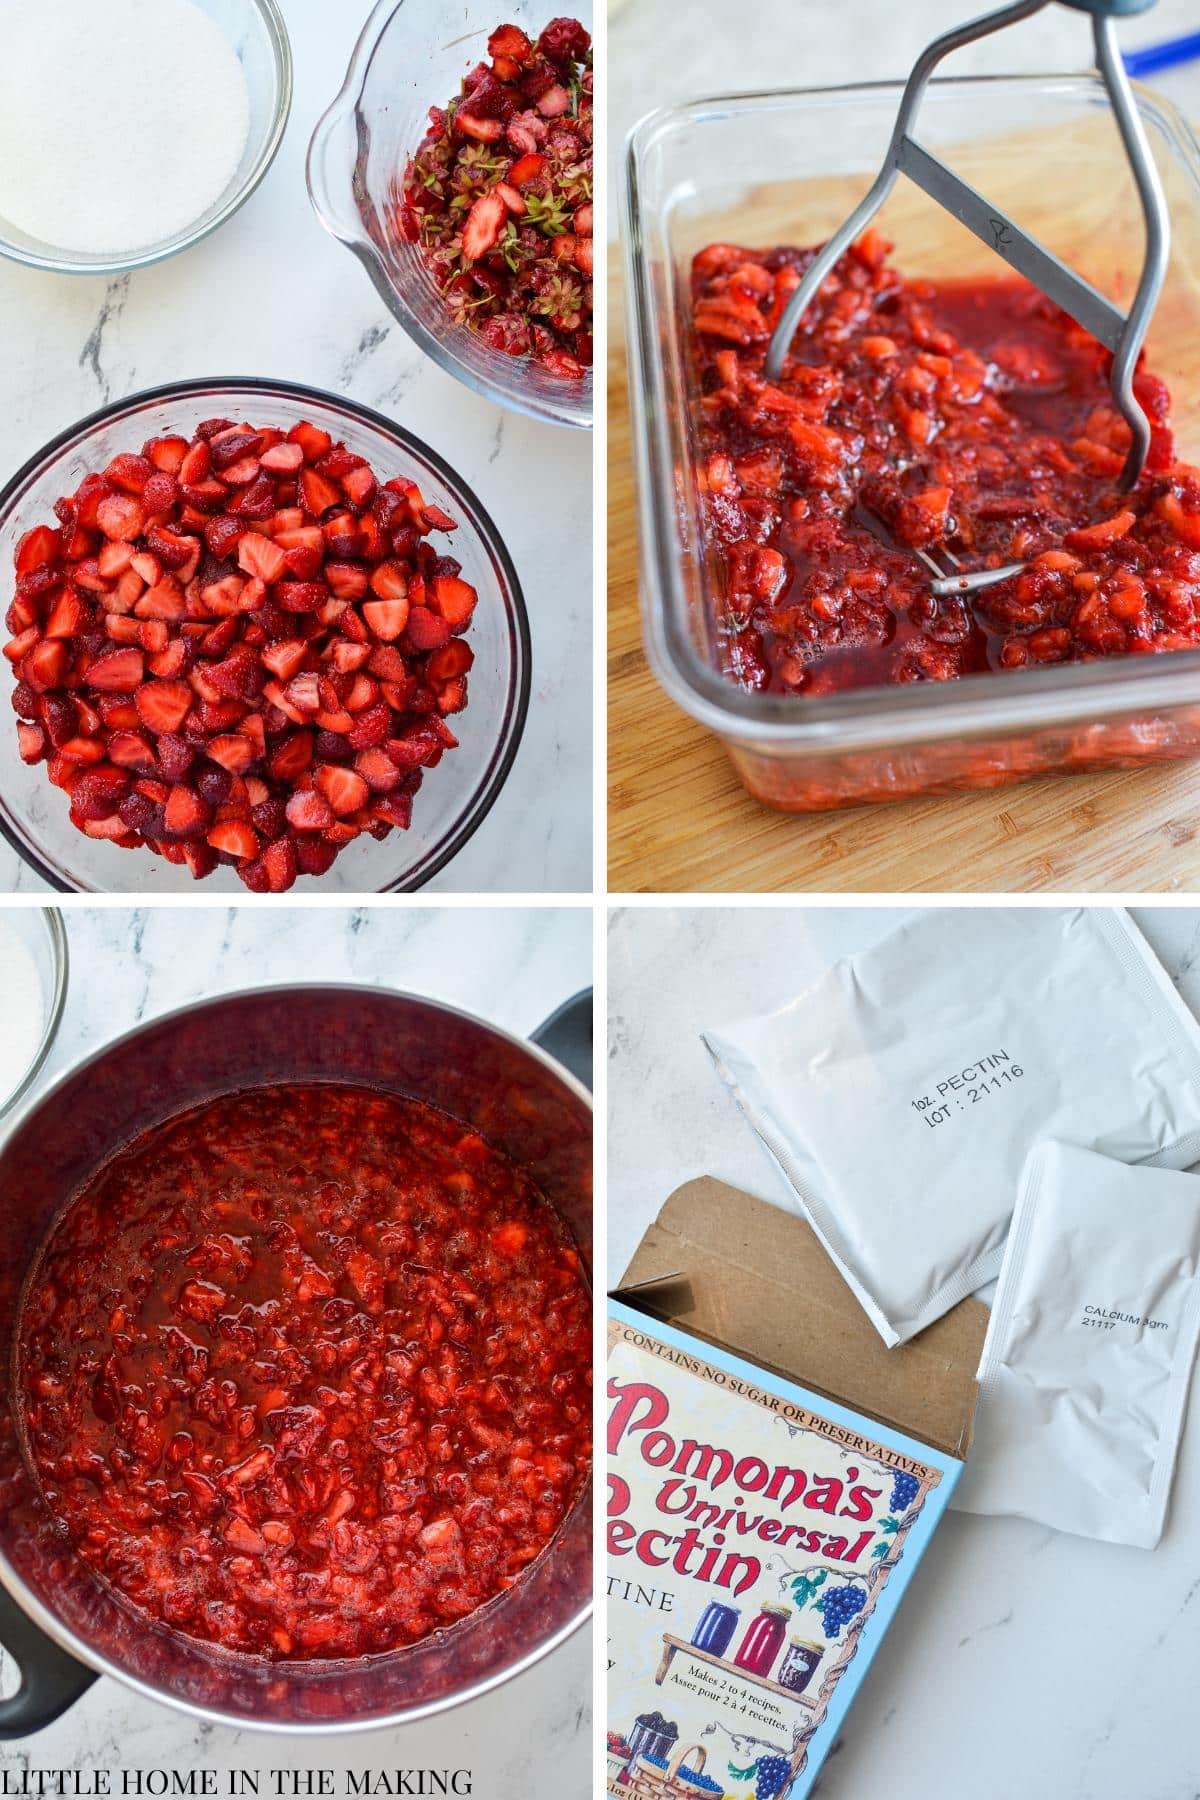 Mashed fresh strawberries to make strawberry jam.